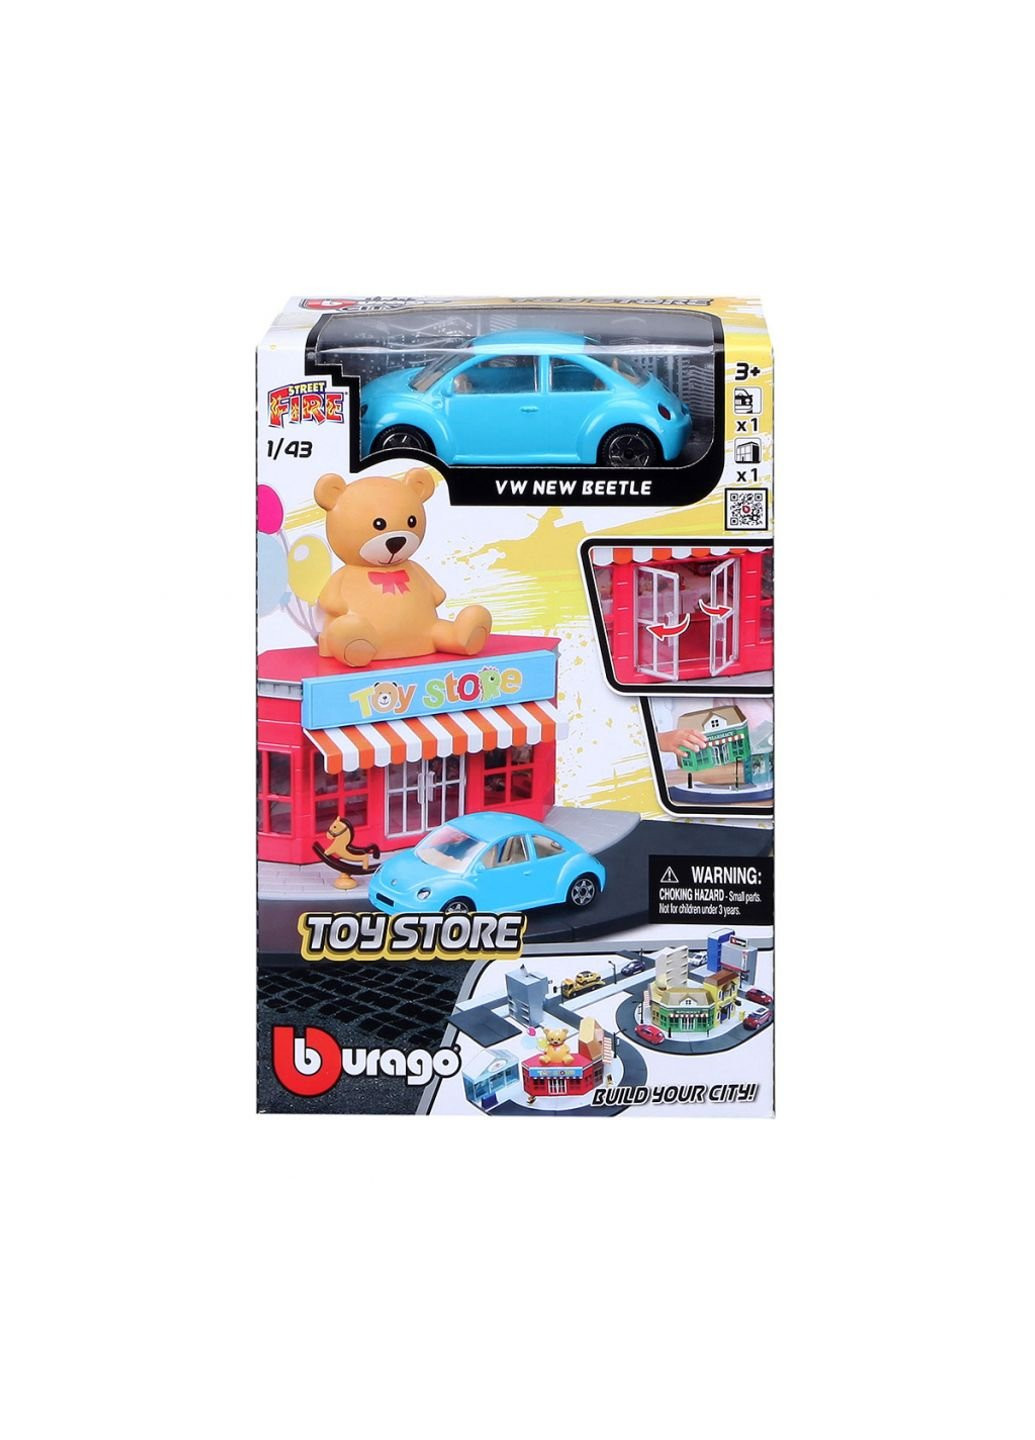 Игровой набор серии City - Магазин игрушек (18-31510) Bburago (254068010)